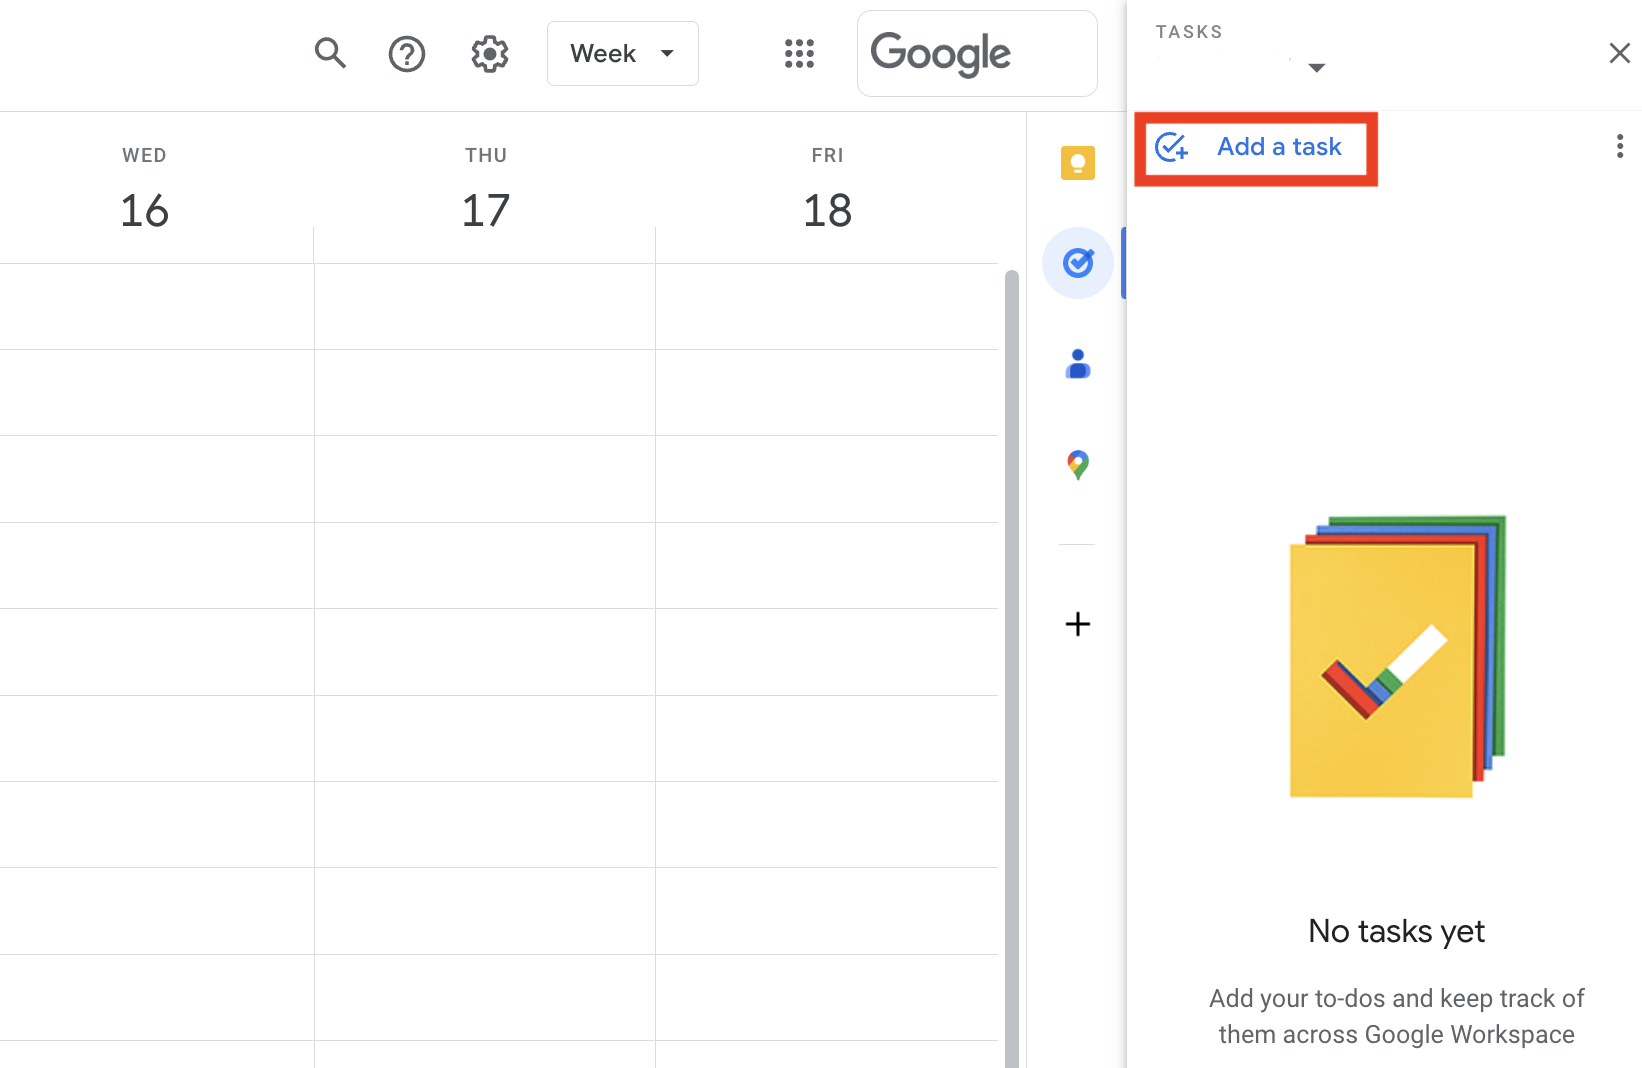 Add the tasks on Google Calendar